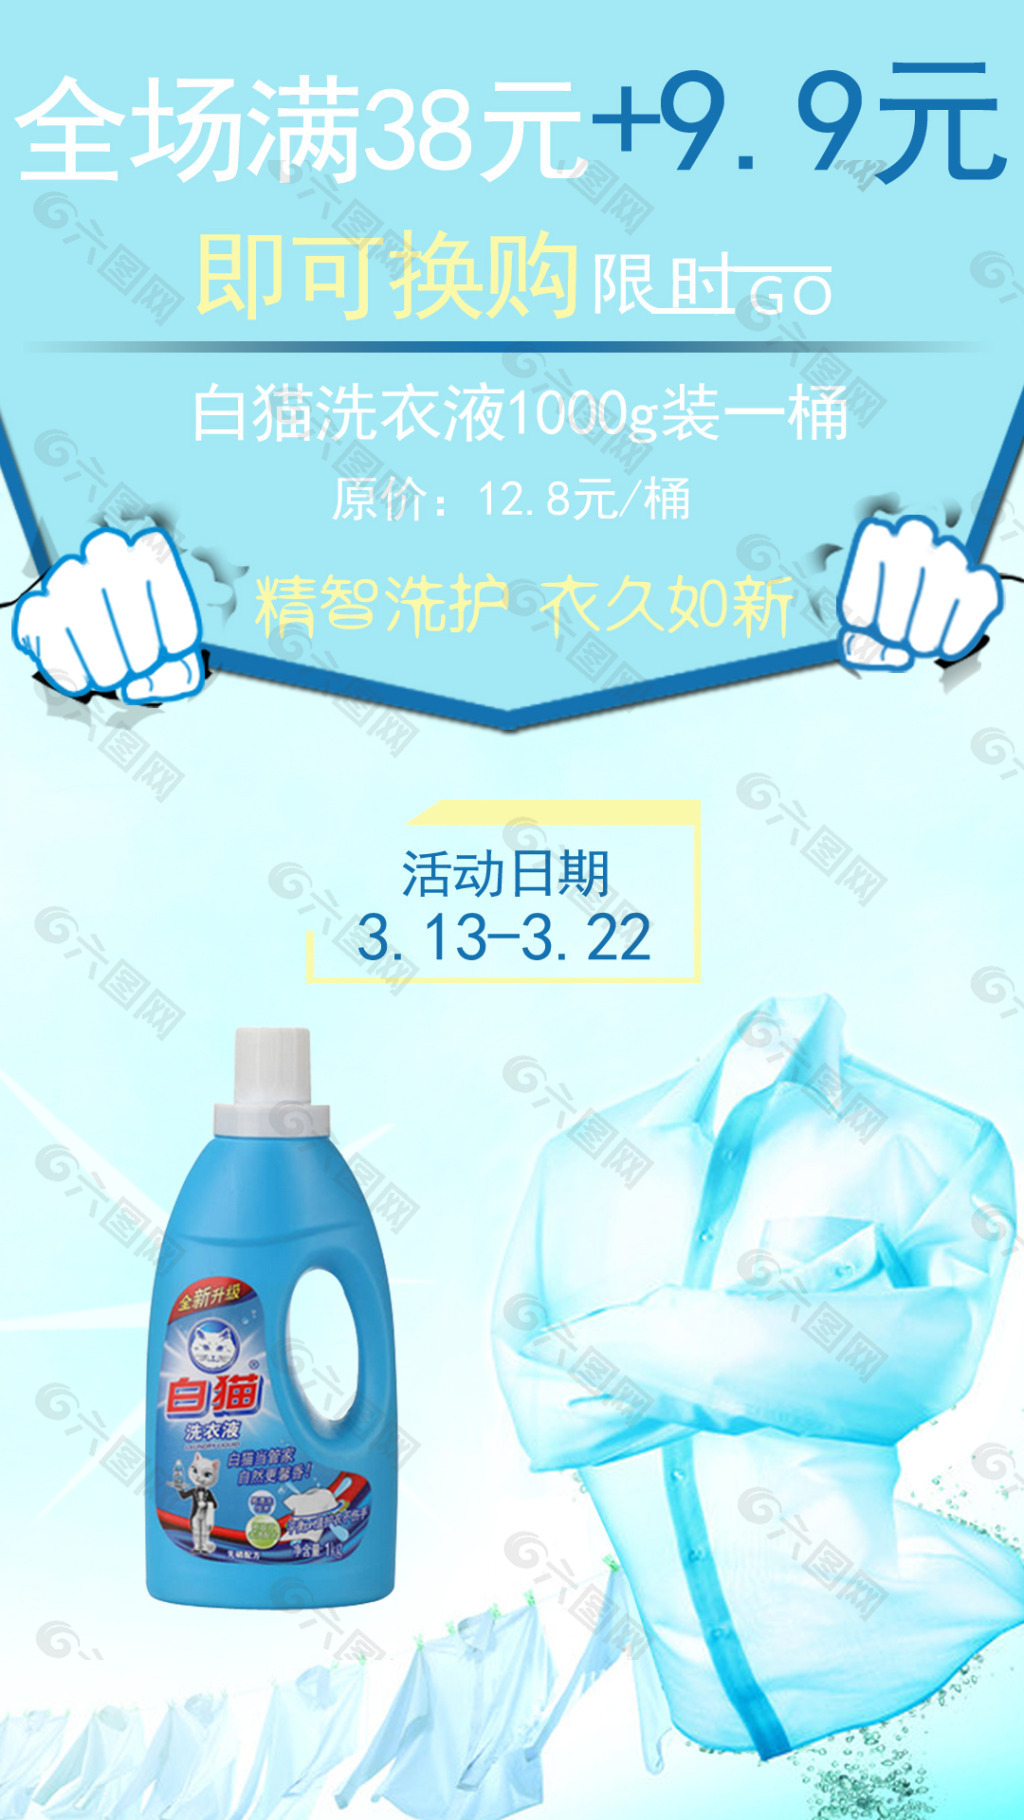 洗衣液淘宝换购促销活动海报平面广告素材免费下载(图片编号:4984376)